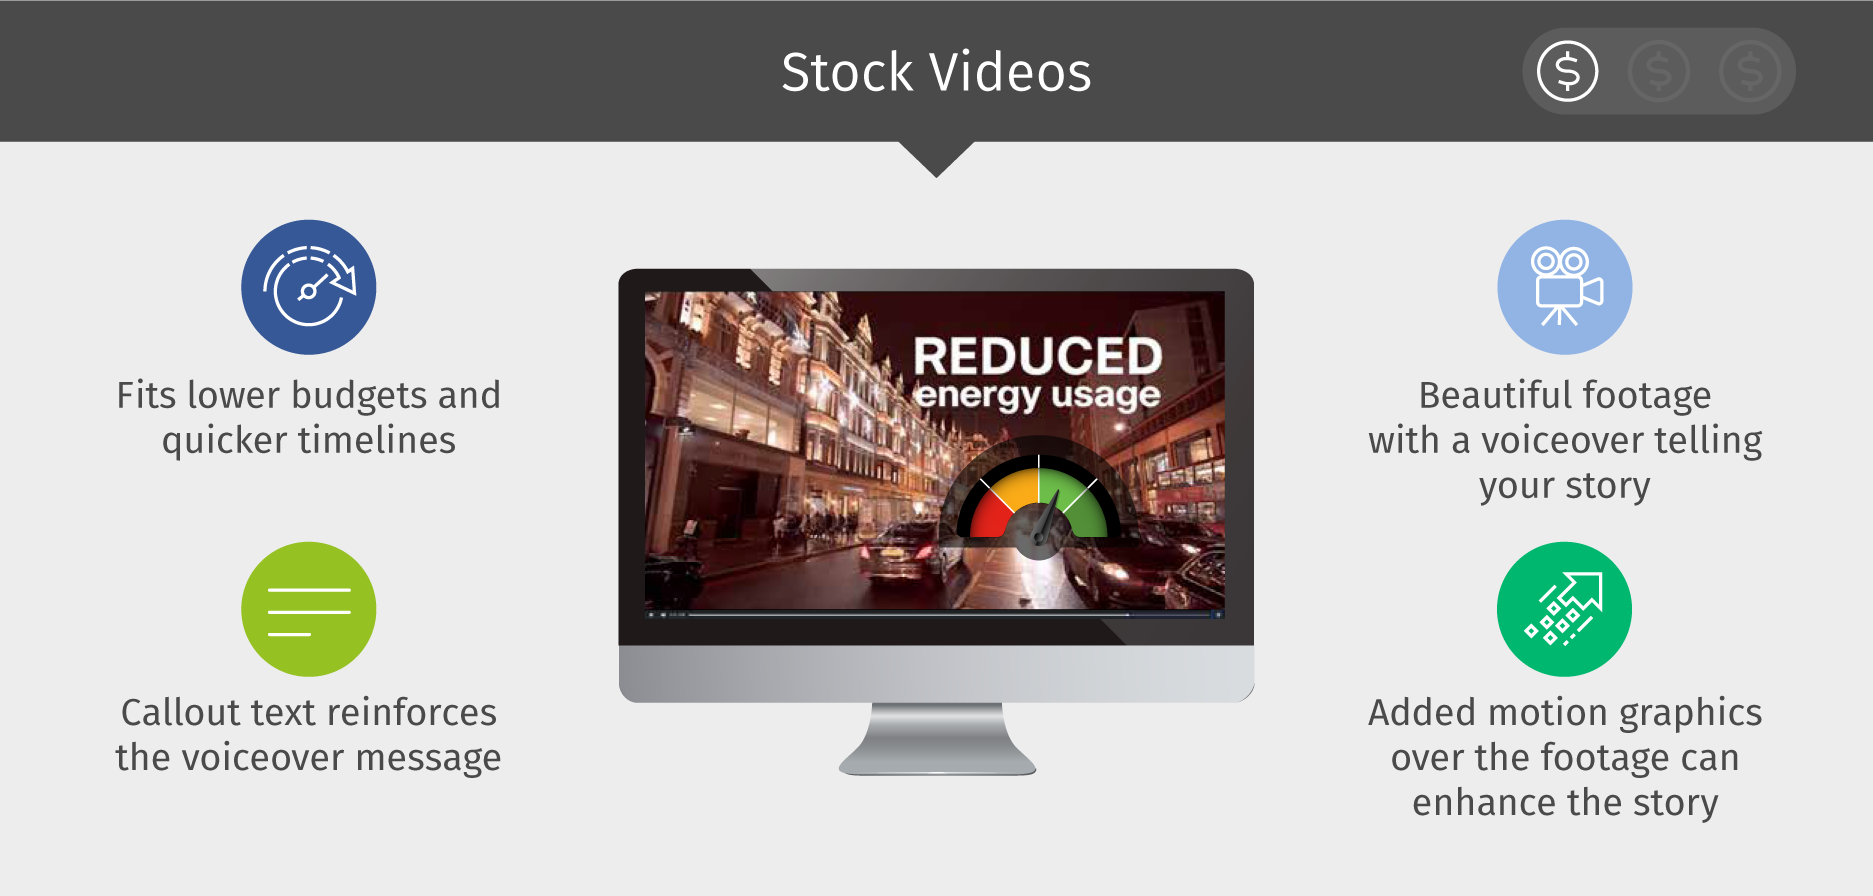 Stock Videos